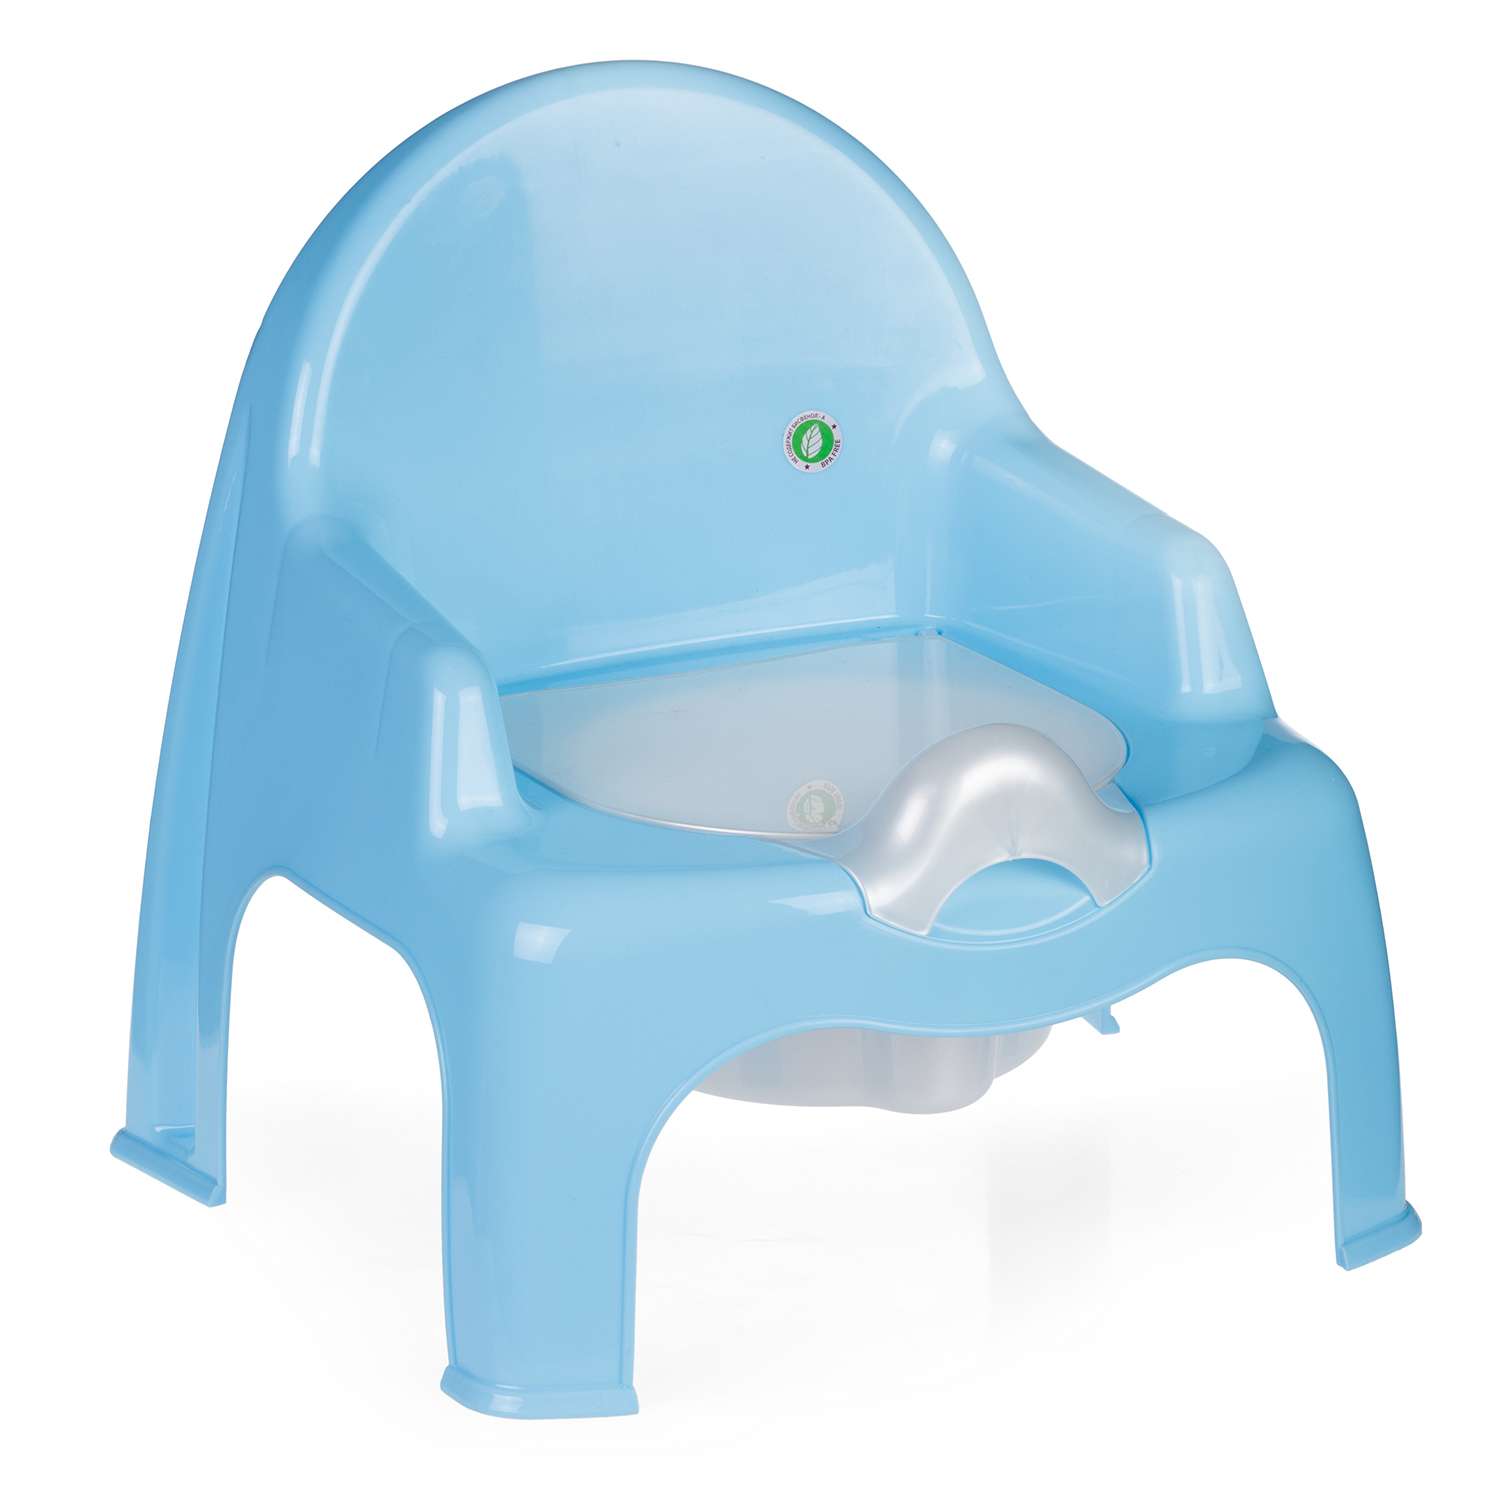 Горшок детский elfplast стульчик голубой - фото 1